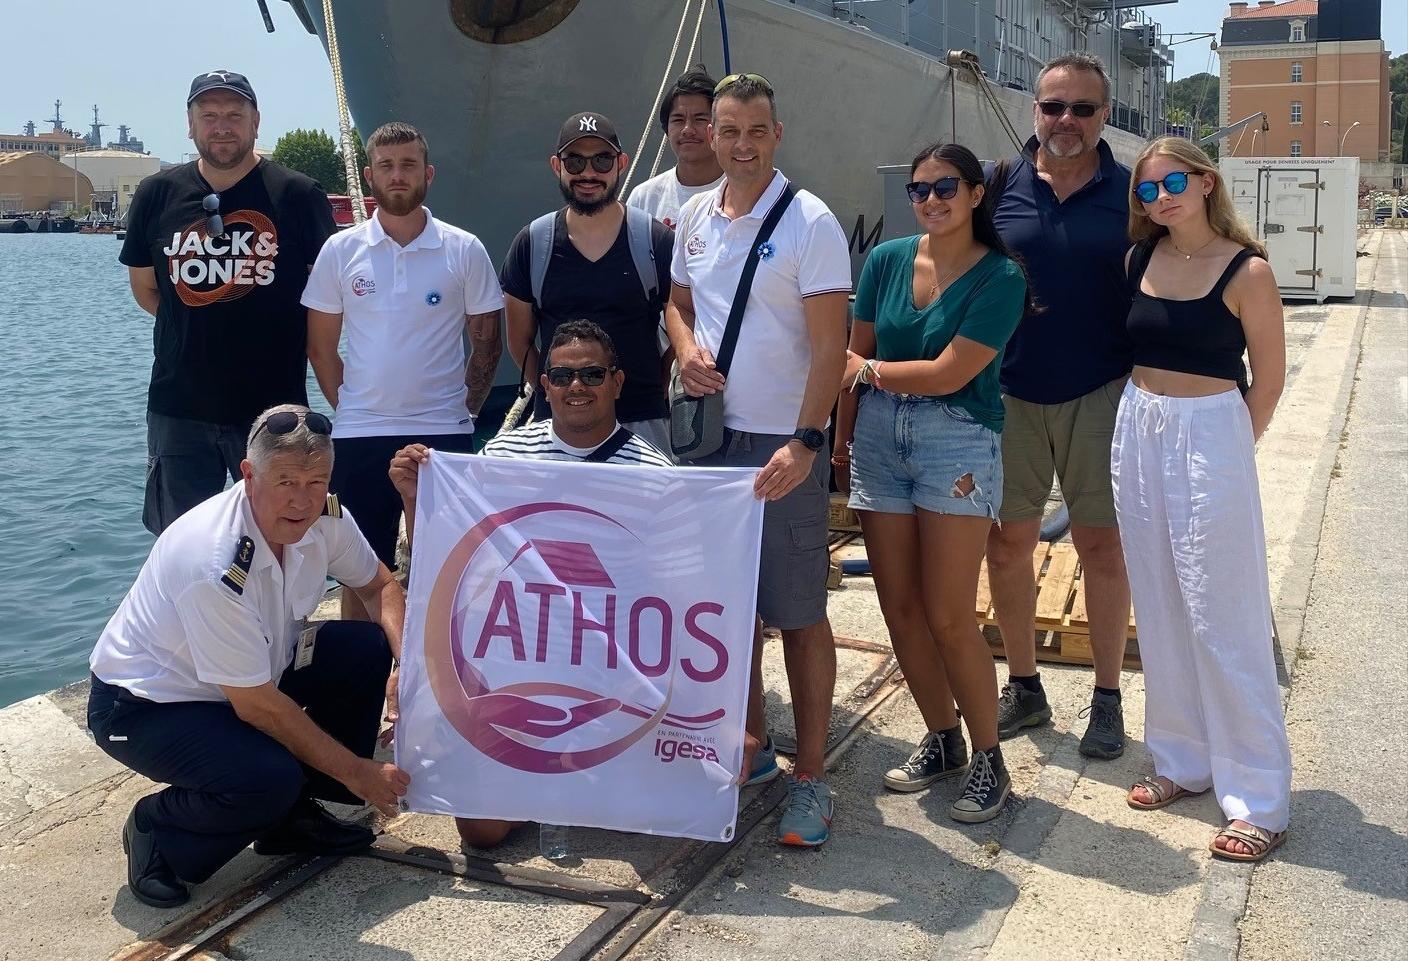  1ère visite pour la maison ATHOS sur la base navale de Toulon